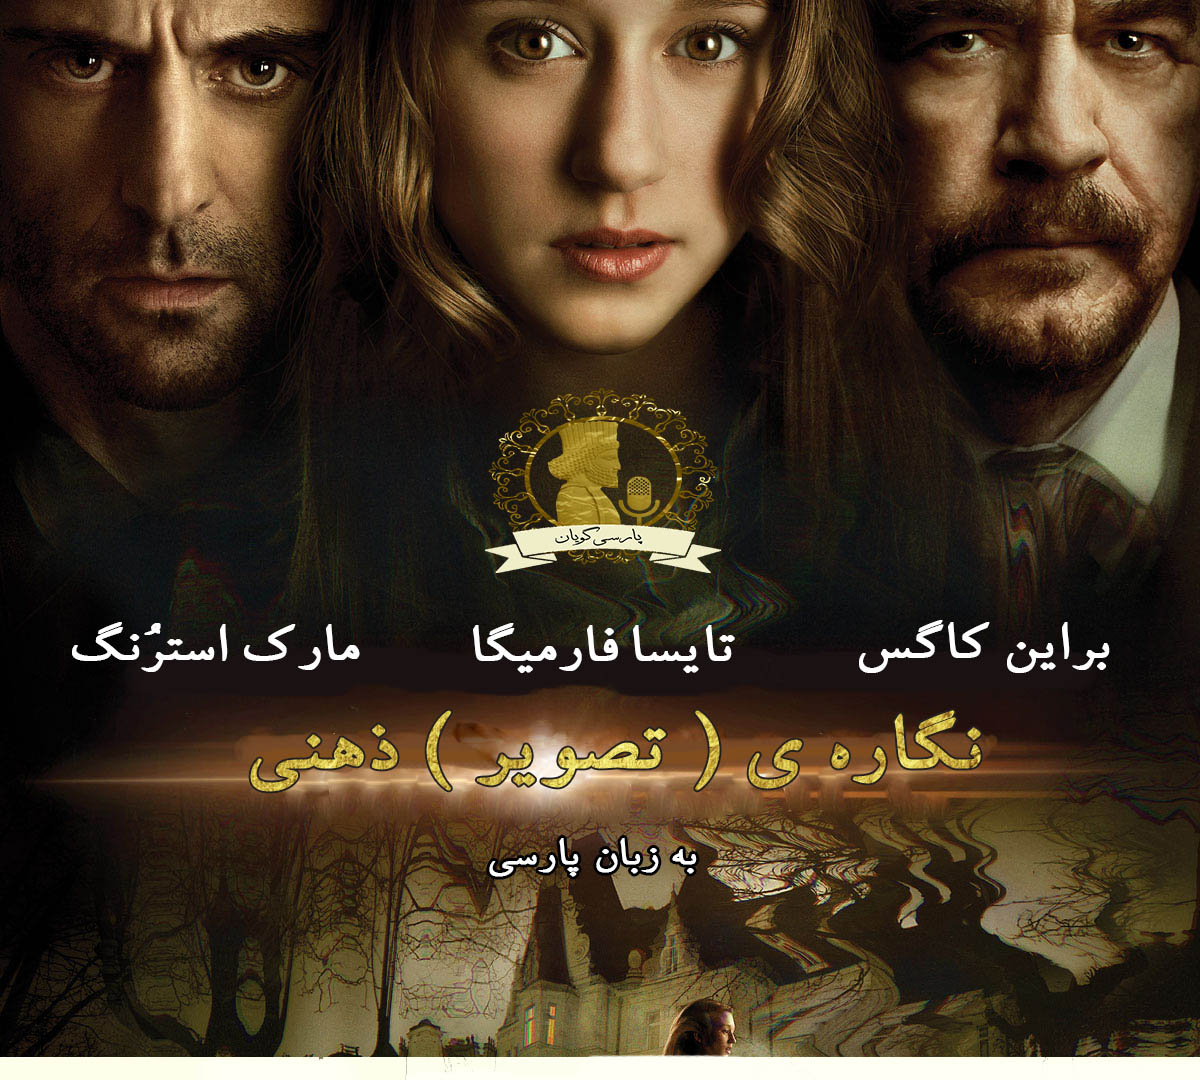 دانلود فیلم تصویر ذهنی 2013 دوبله فارسی و سانسور شده 